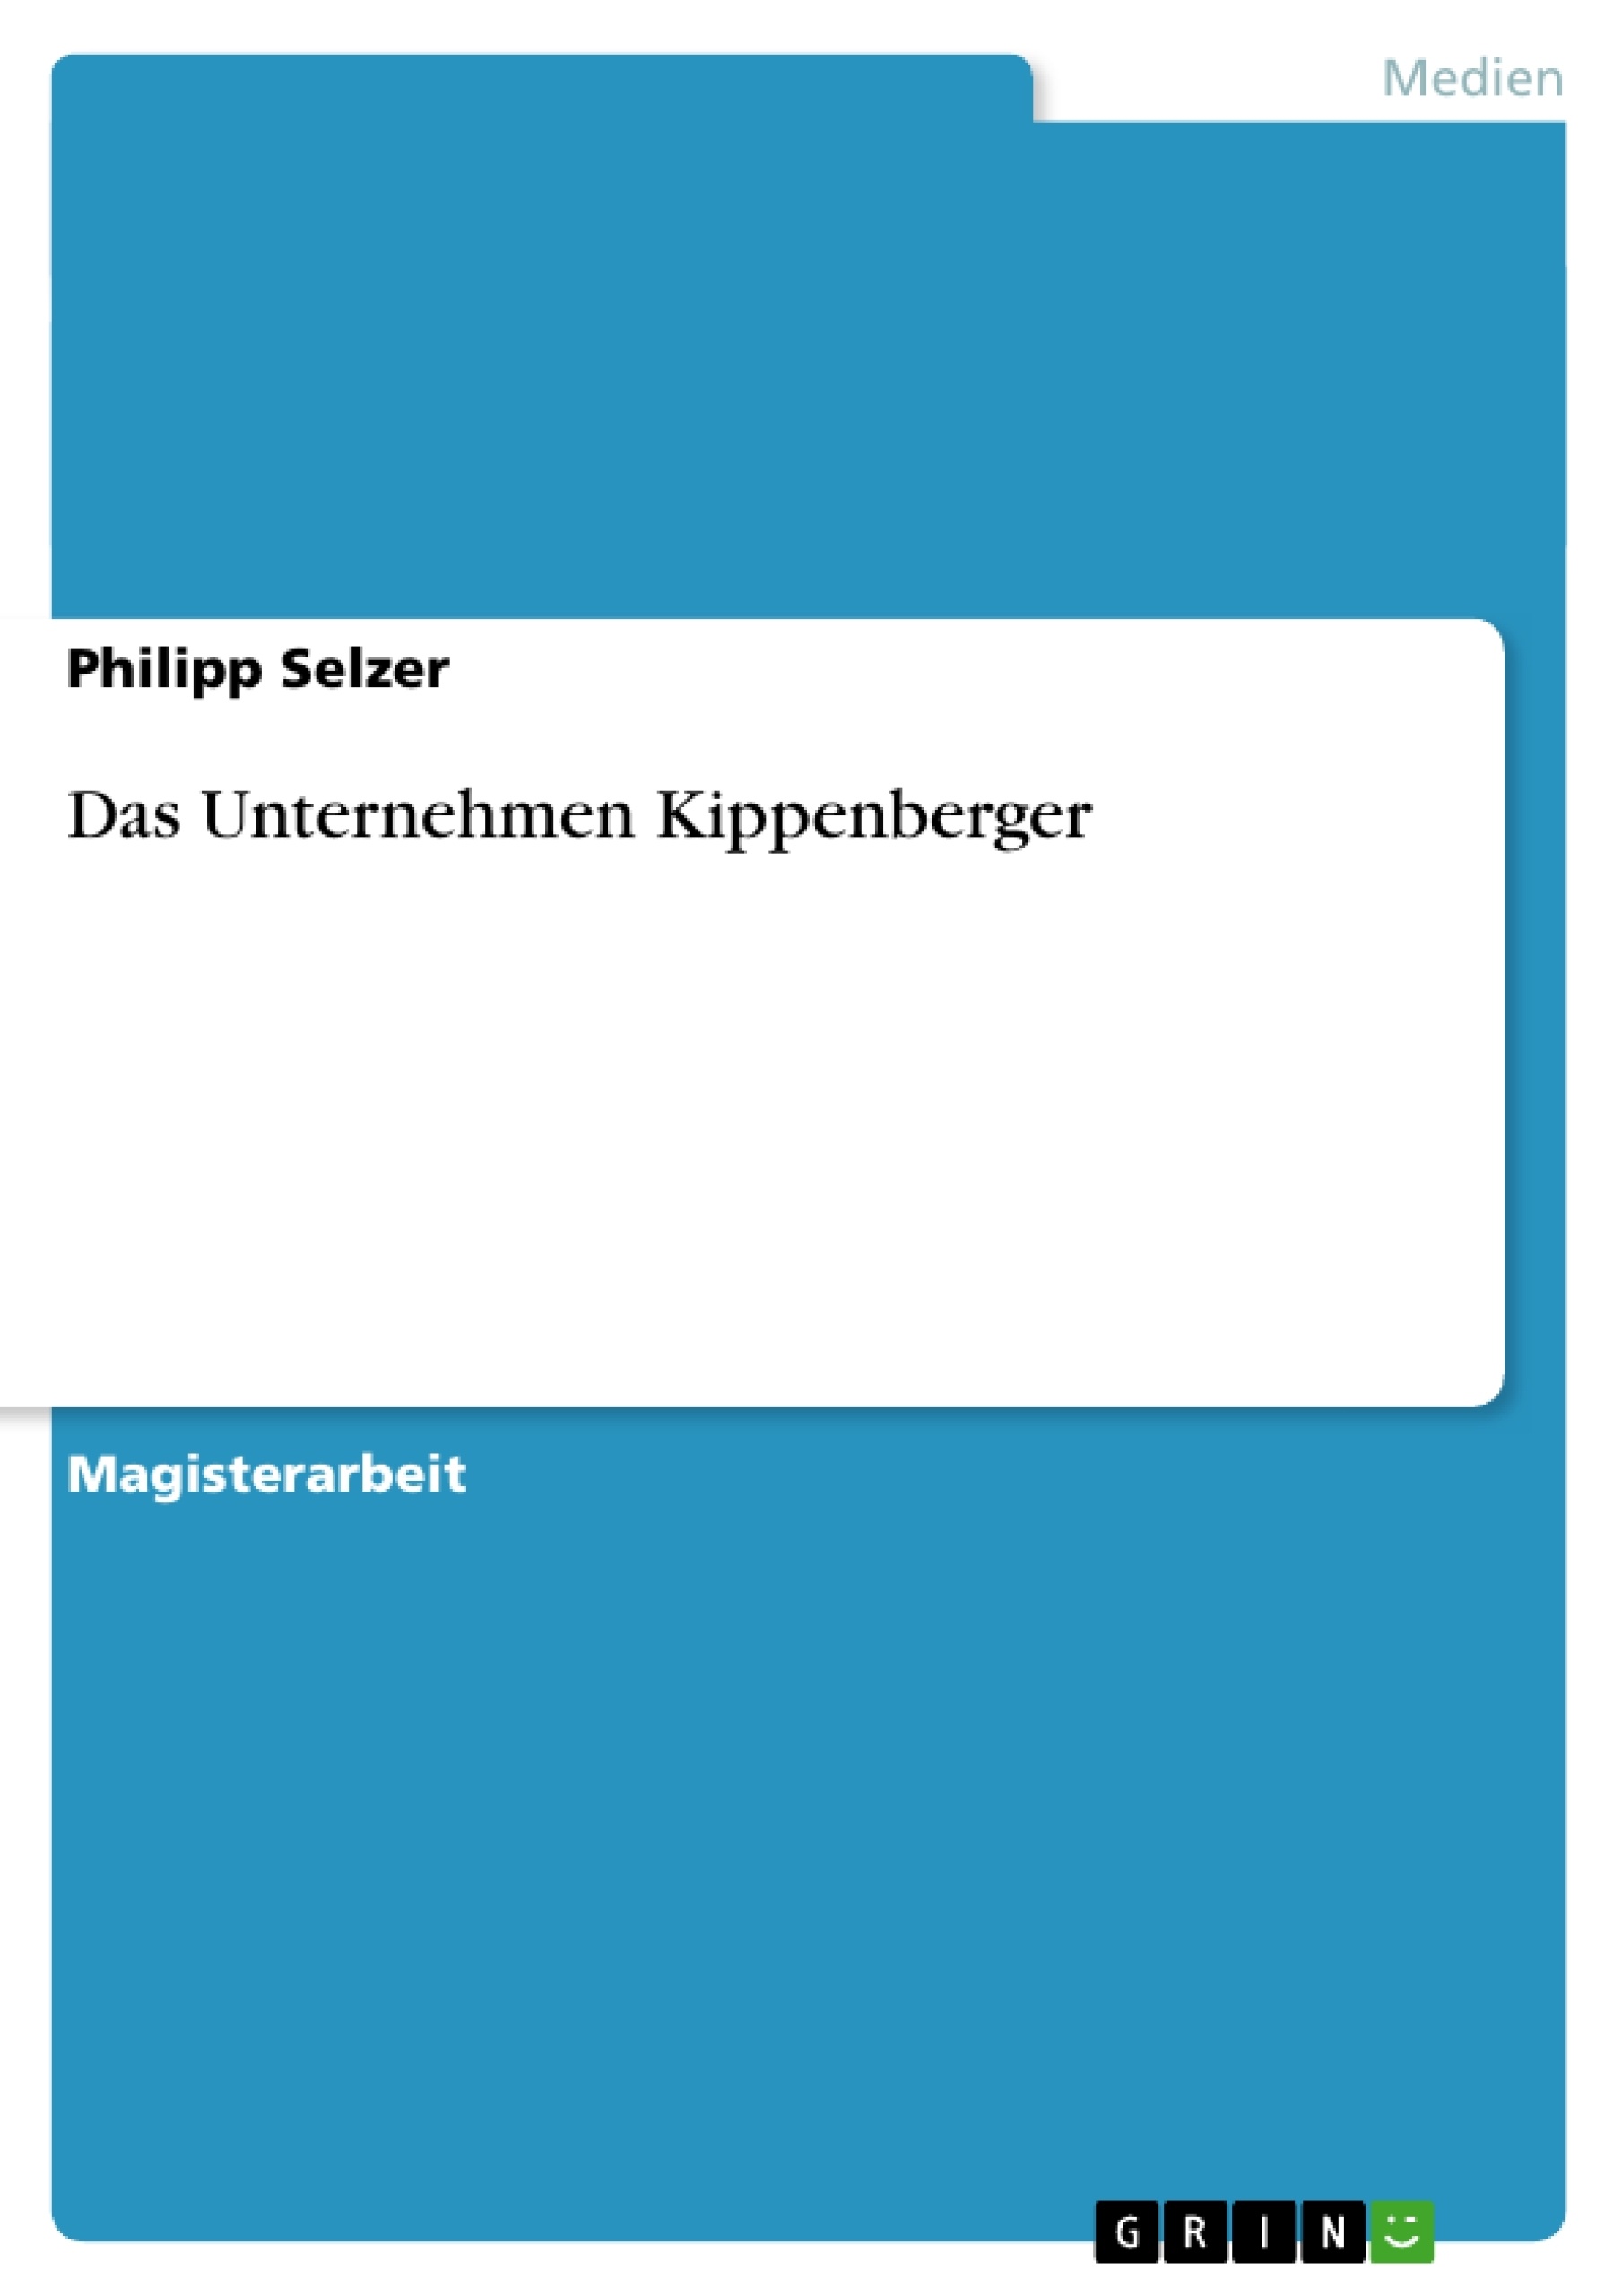 Título: Das Unternehmen Kippenberger